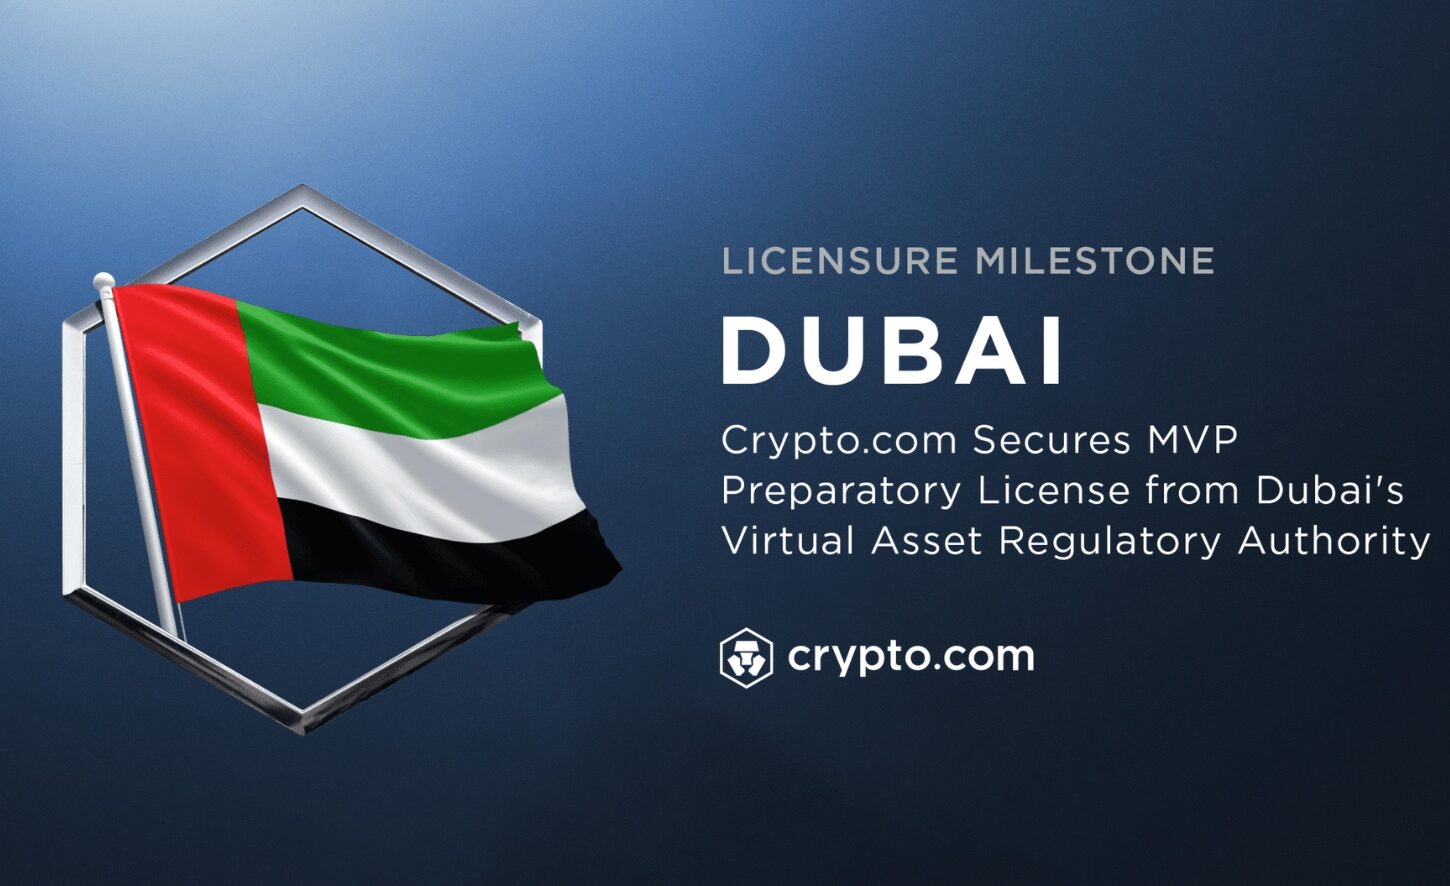 Американская криптобиржа Crypto.com получила предварительную лицензию на работу в Дубае